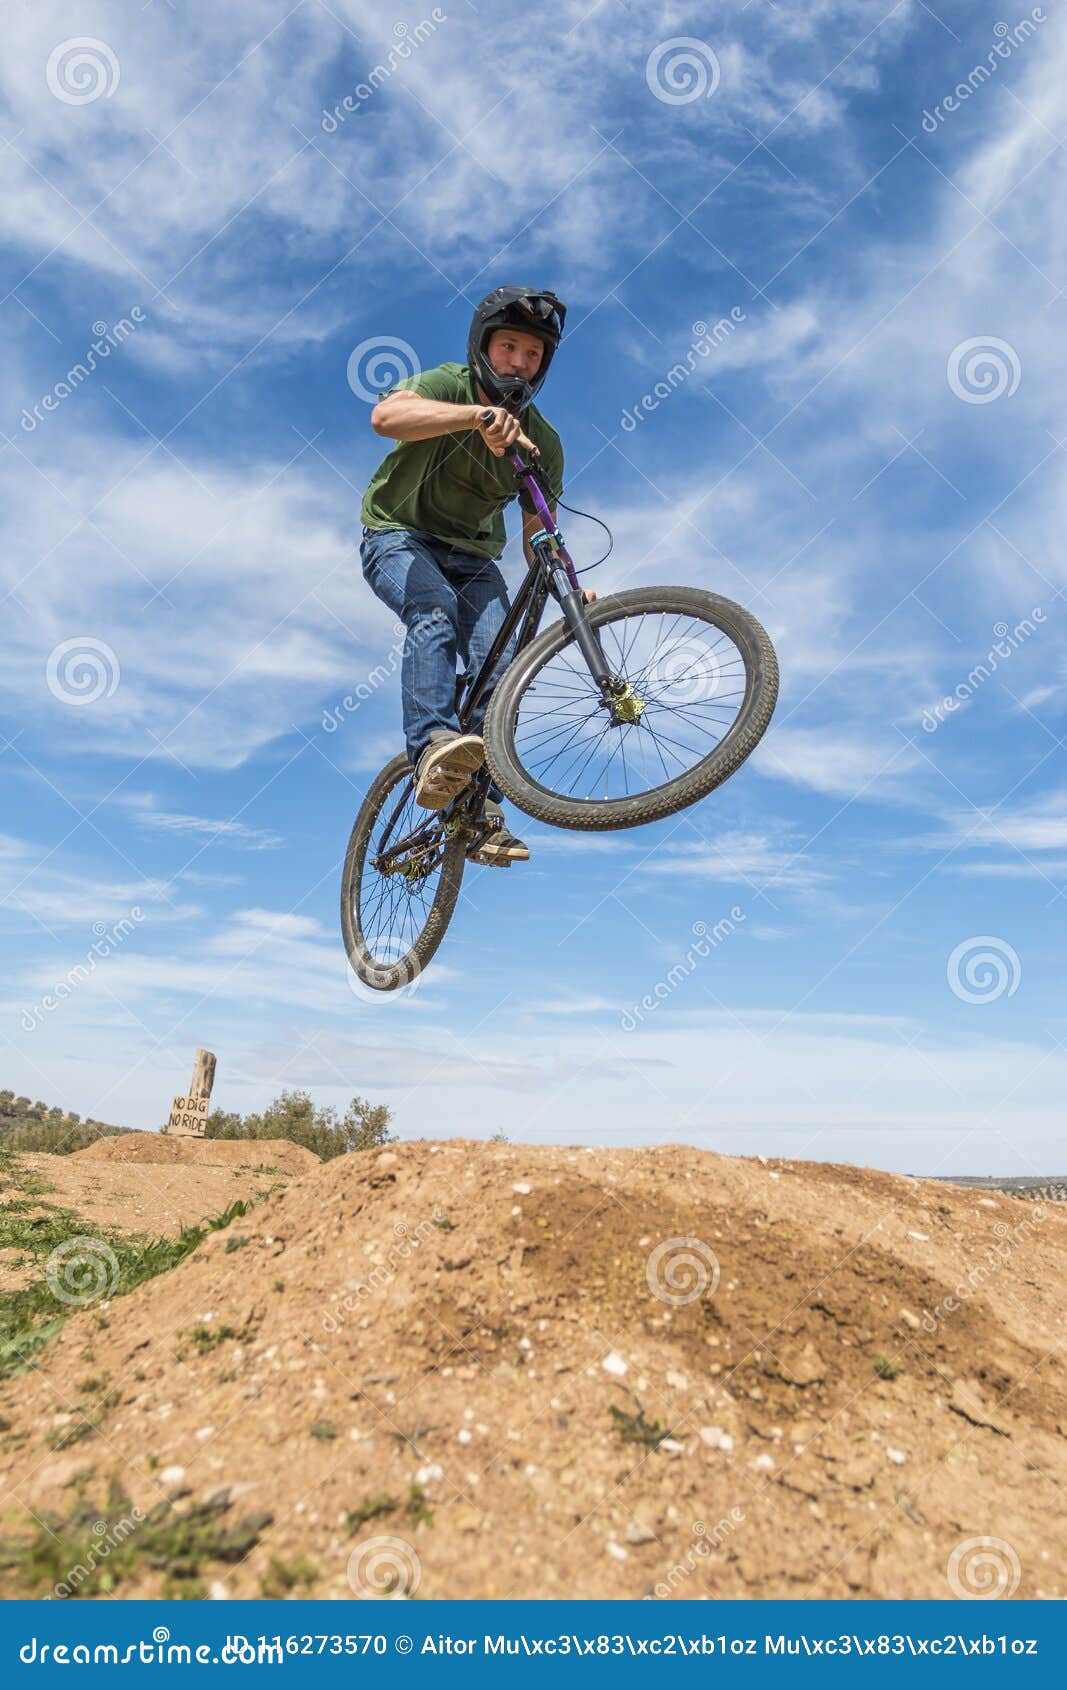 flying mountain bike